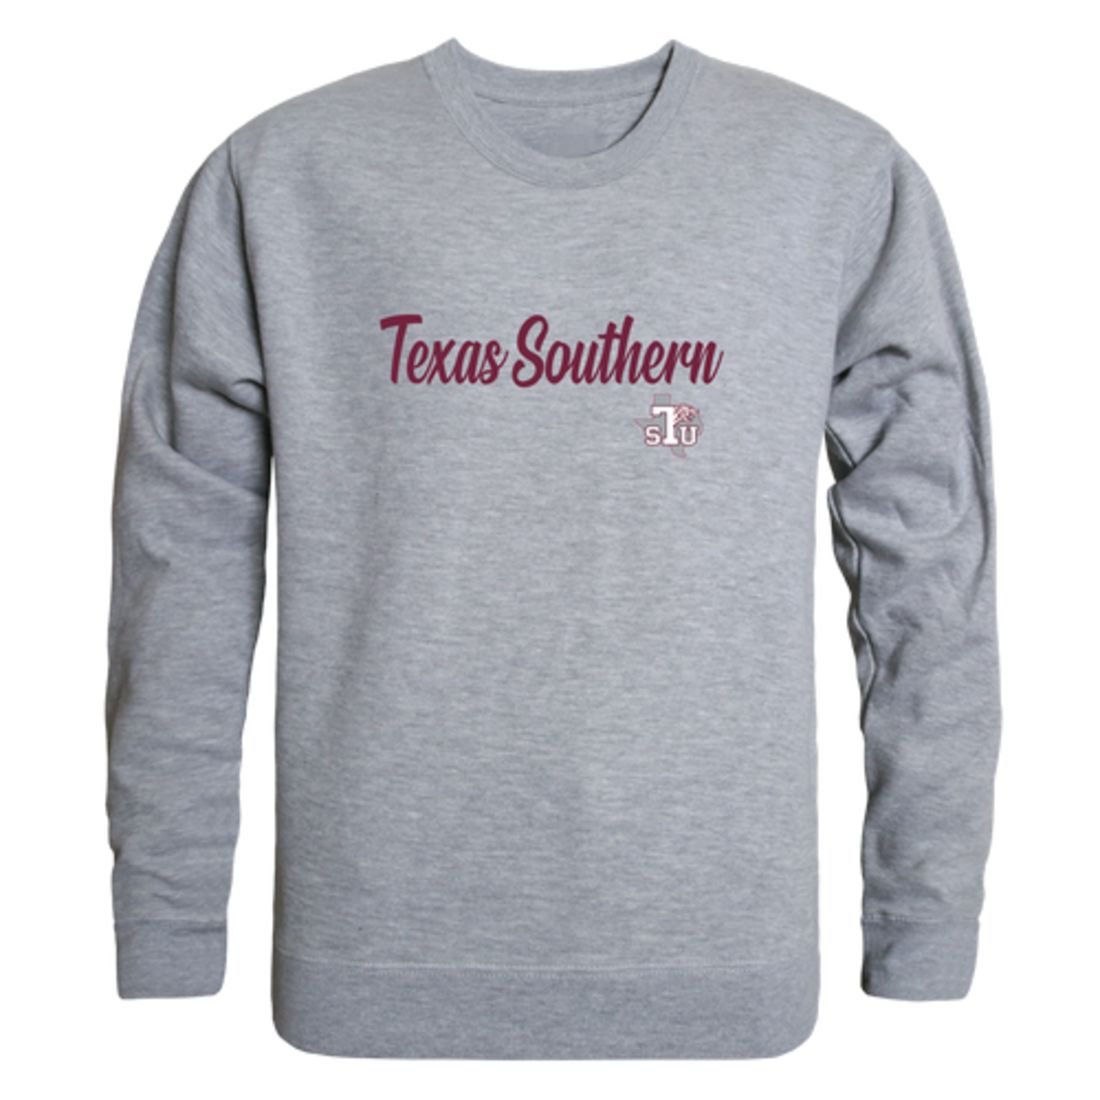 TSU Texas Southern University Tigers Script Crewneck Pullover Sweatshirt Sweater Black-Campus-Wardrobe